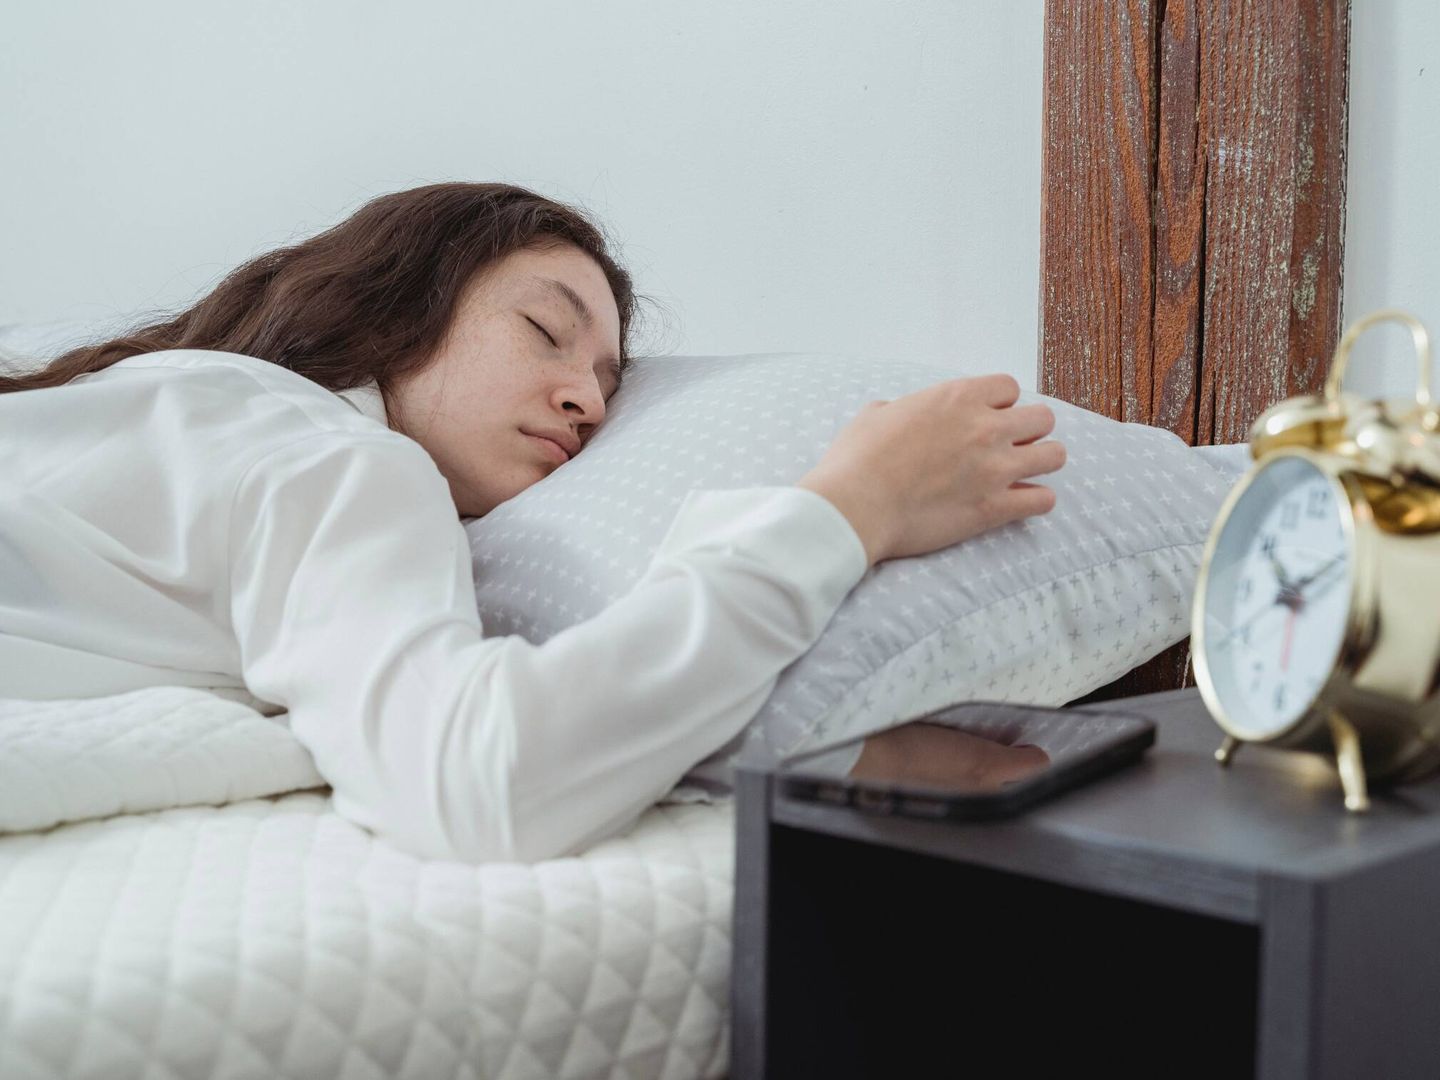 Las rutinas de sueño son altamente individualizadas y deben considerarse caso por caso. (Pexels)